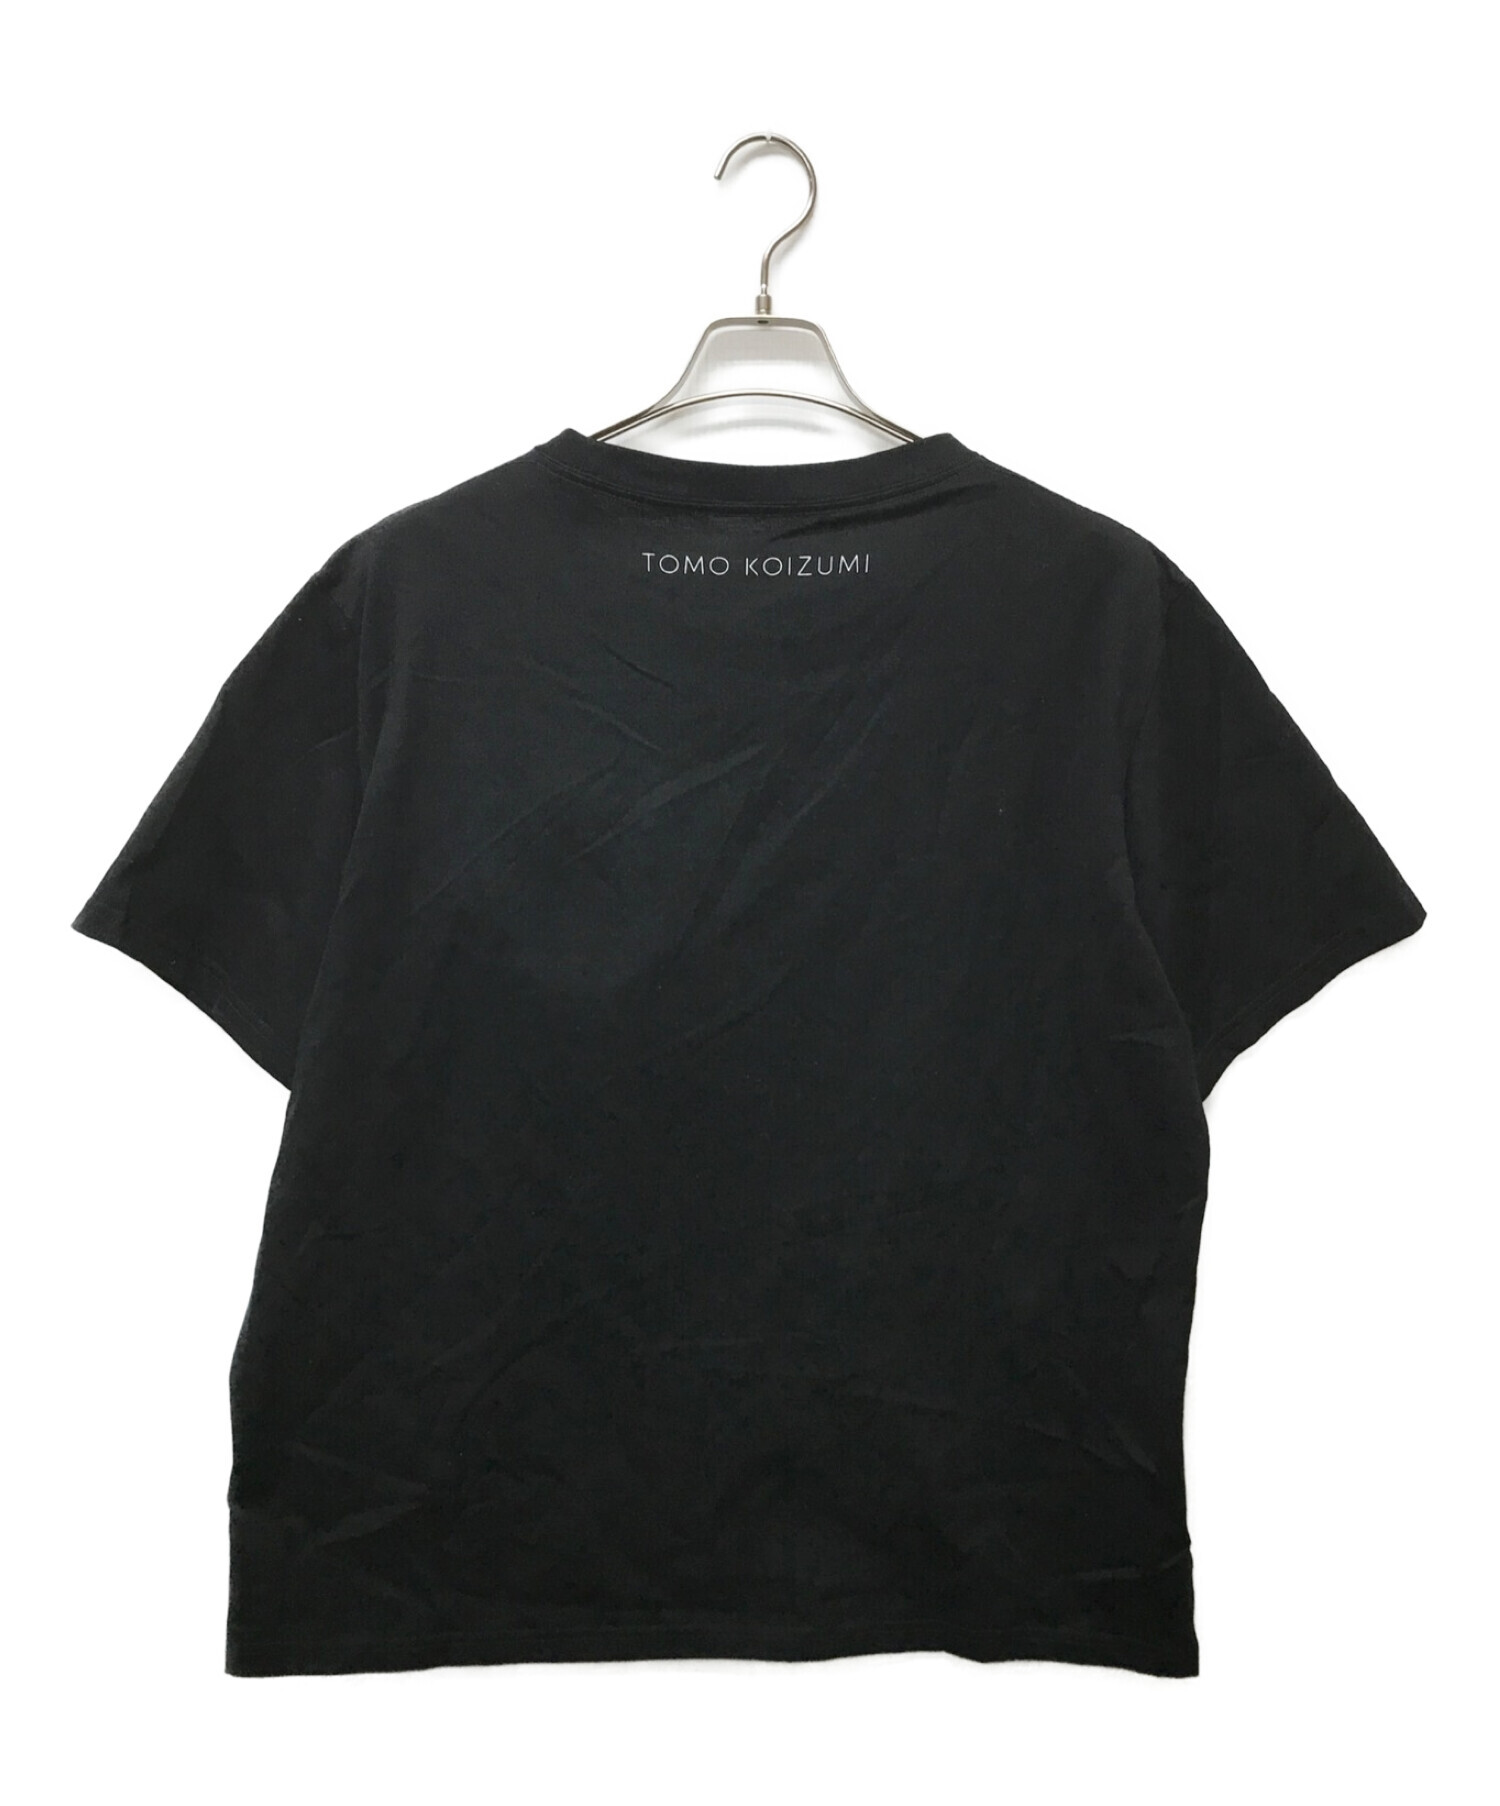 TOMO KOIZUMI (トモコイズミ) Tシャツ ブラック サイズ:XL